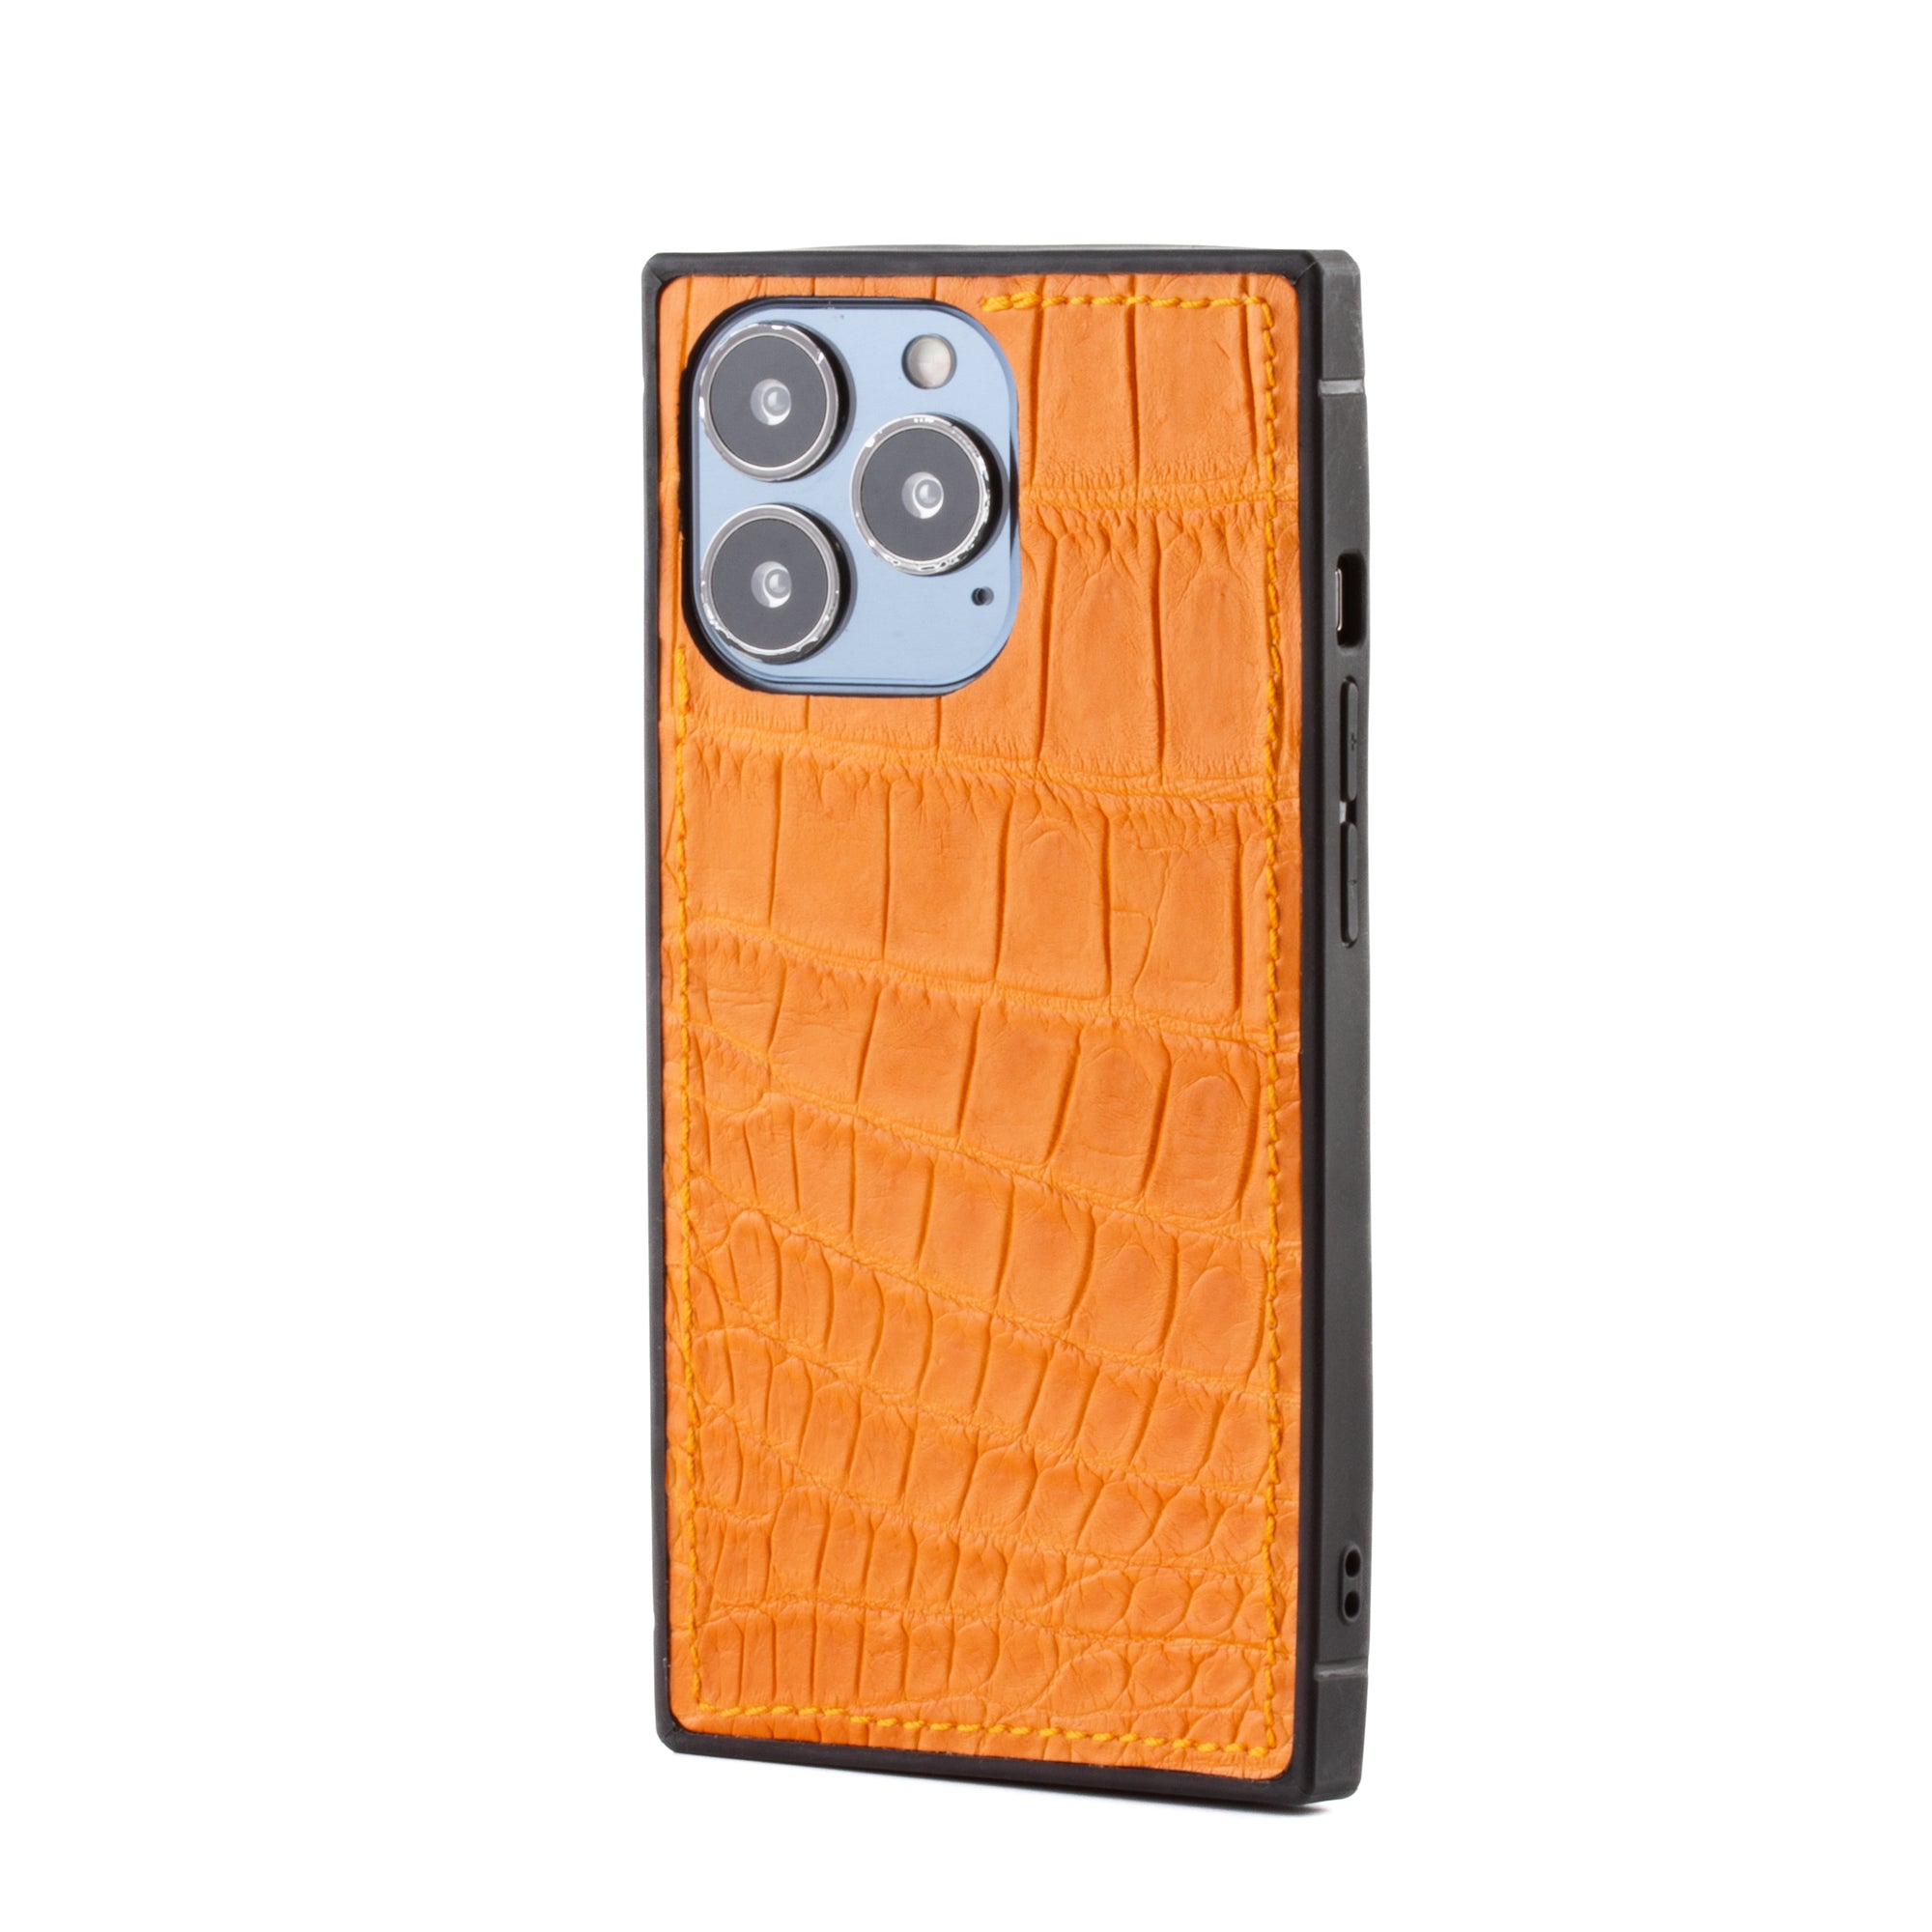 Vente exclusive - Coque "Square case" cuir pour iPhone 13 Pro - Alligator Orange